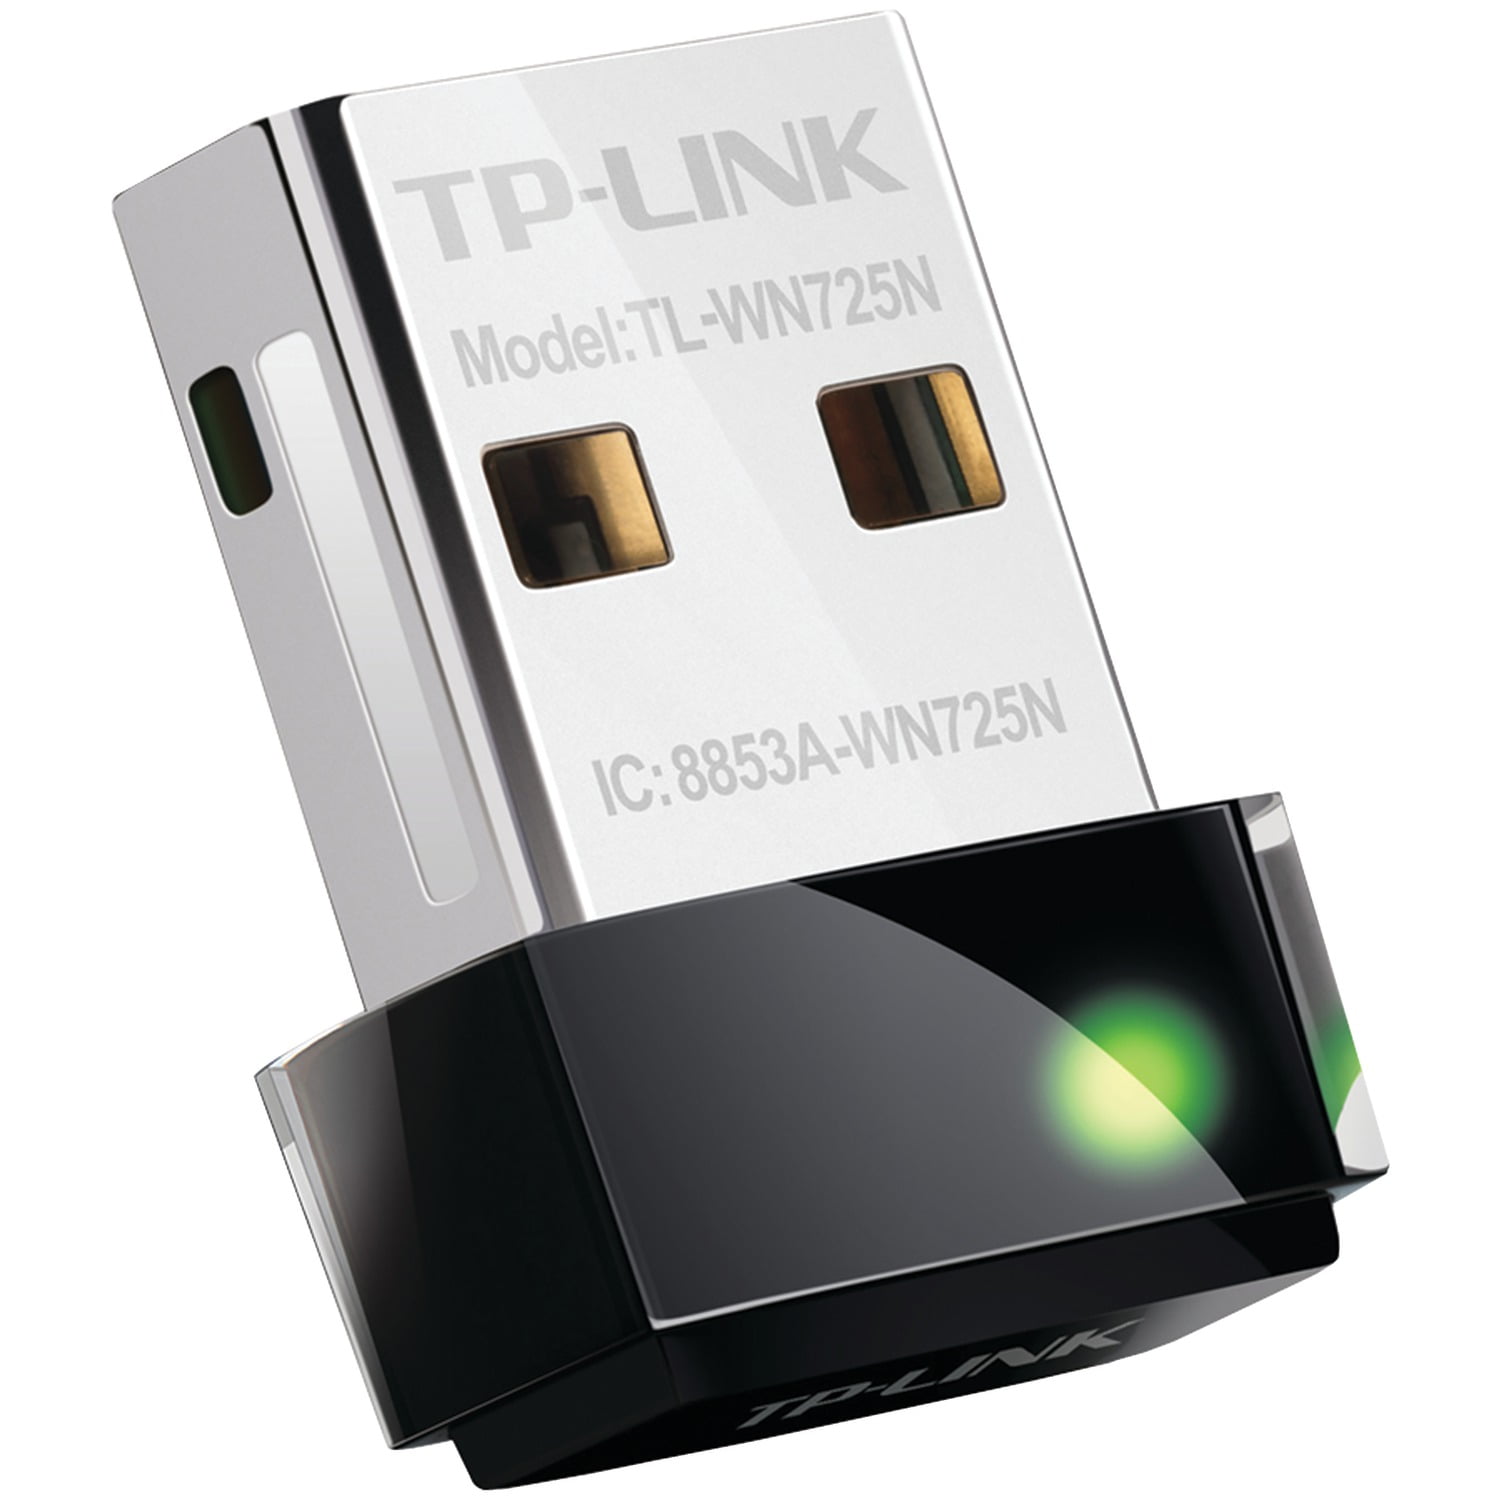 -Link TL-WN725N Wireless N Nano USB Adapter - Walmart.com